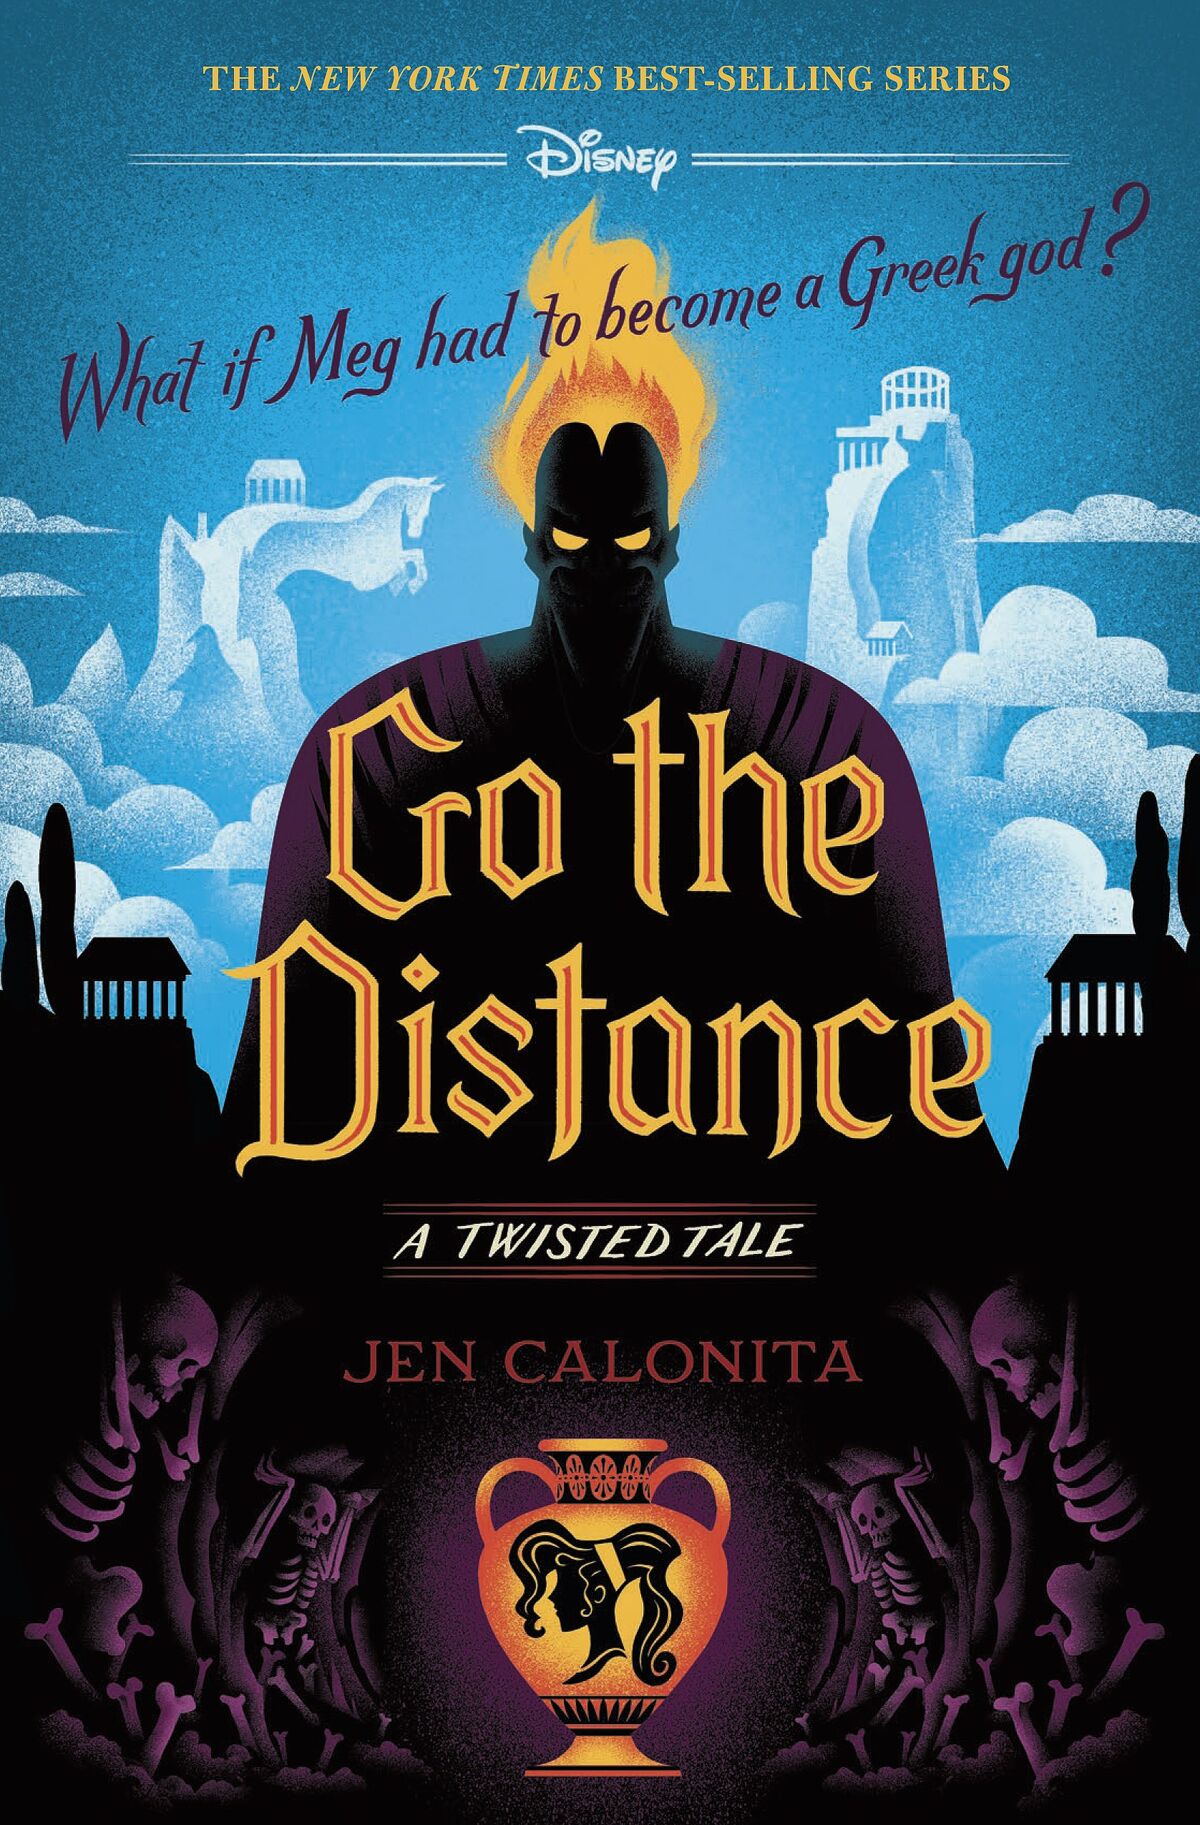 A twisted tale. A Twisted Tale Jen Calonita книга. Jen Calonita a Twisted Tale. Go the distance. Twisted Tales.